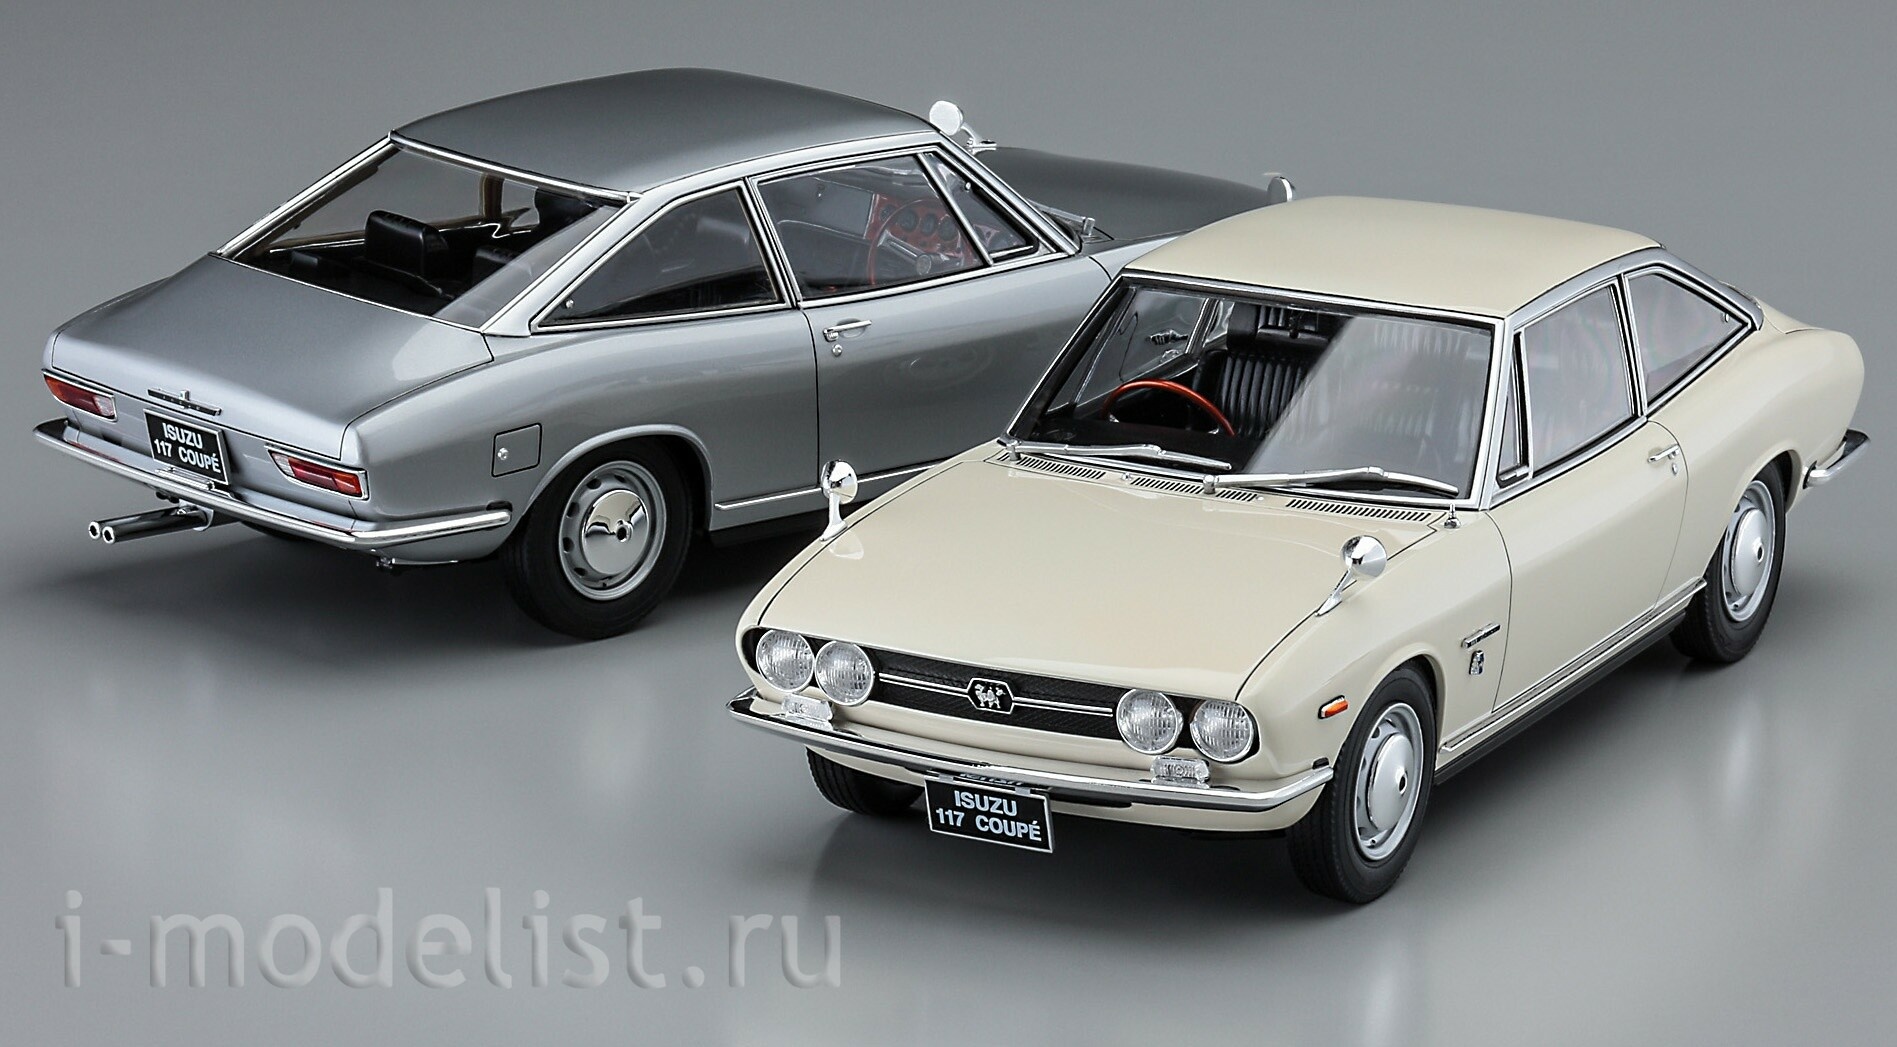 21144 Hasegawa 1/24 Isuzu 117 Coupe Early Version (1968)